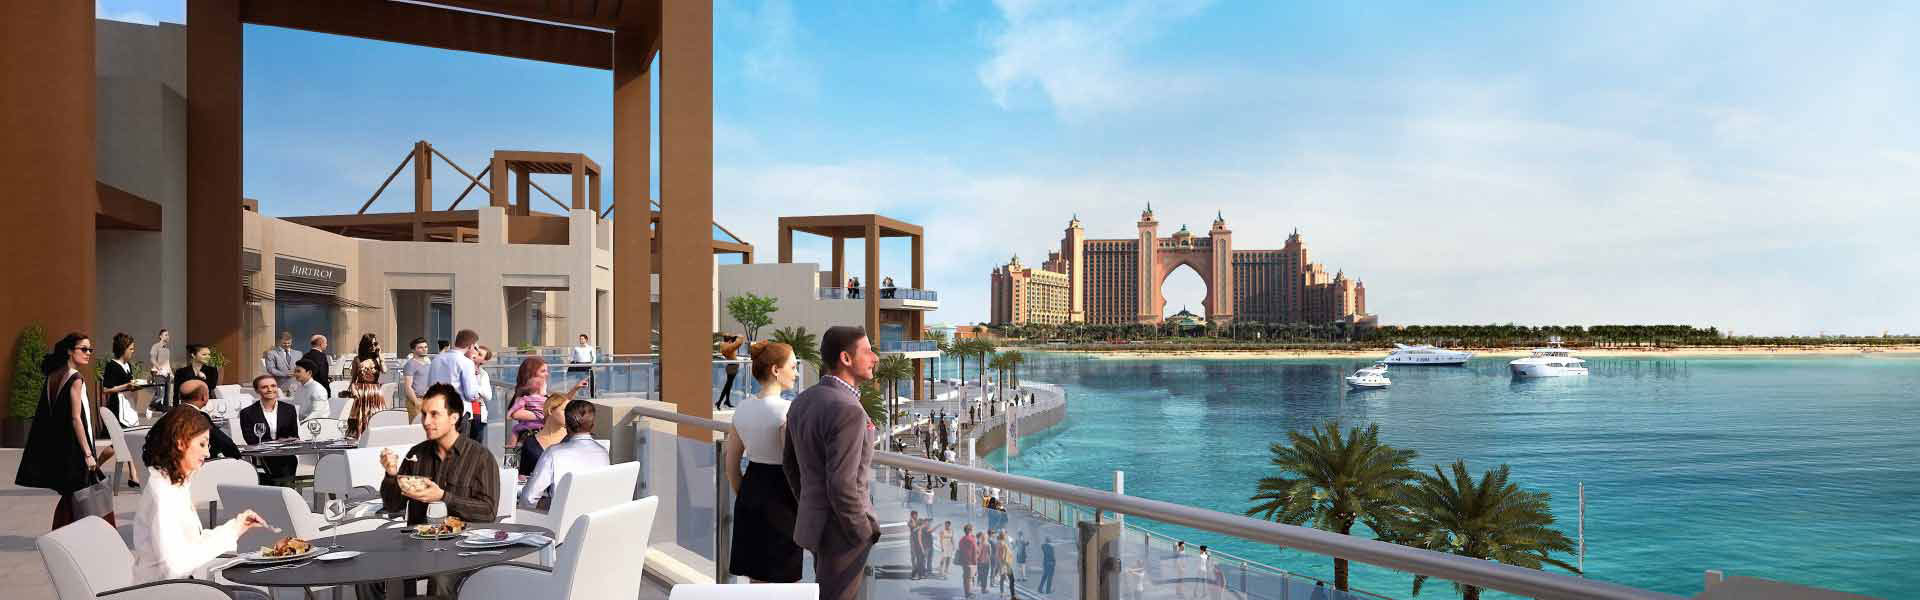 Imazhi grafik i banerit i hotelit Atlantis dhe njerëzve që shijojnë pamjen nga distanca